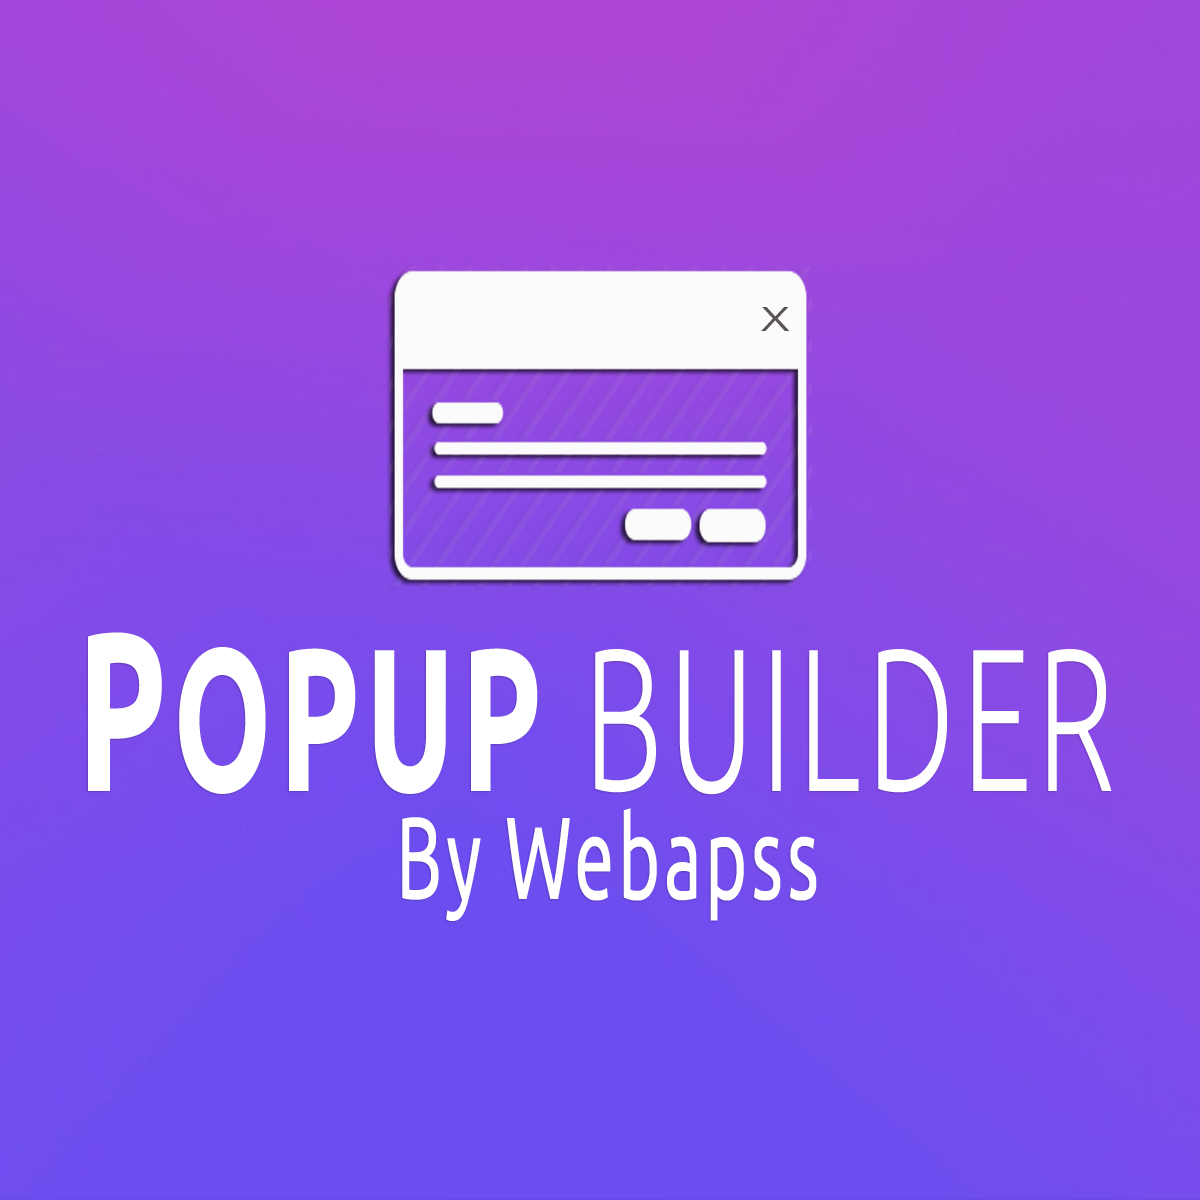 Popup Builder by Webapss